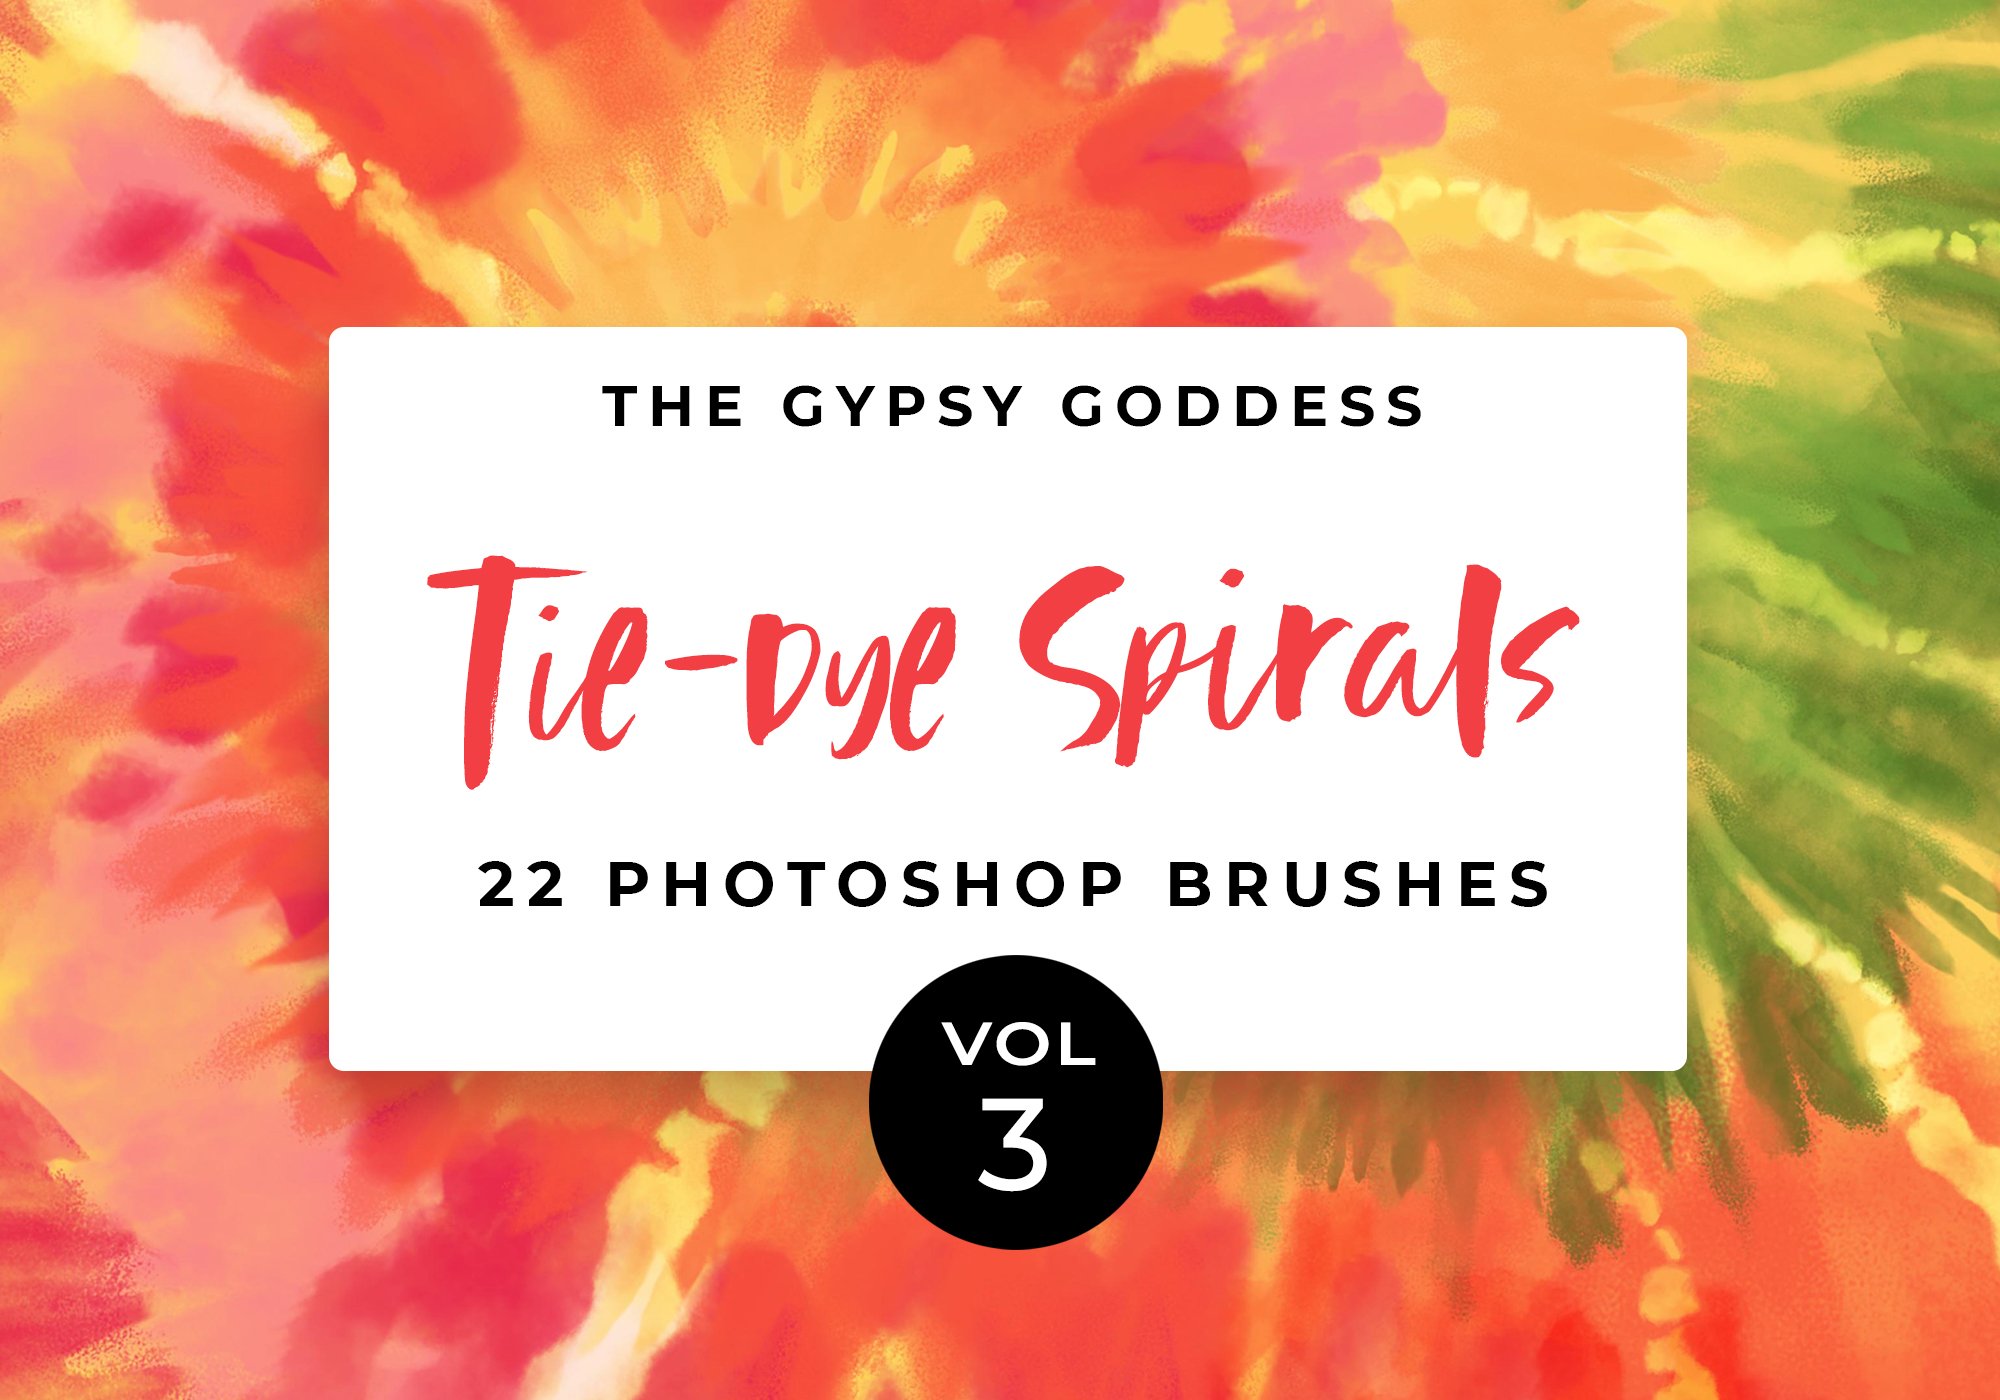 Digital Tie-Dye Brushes Vol 3 - The Gypsy Goddess